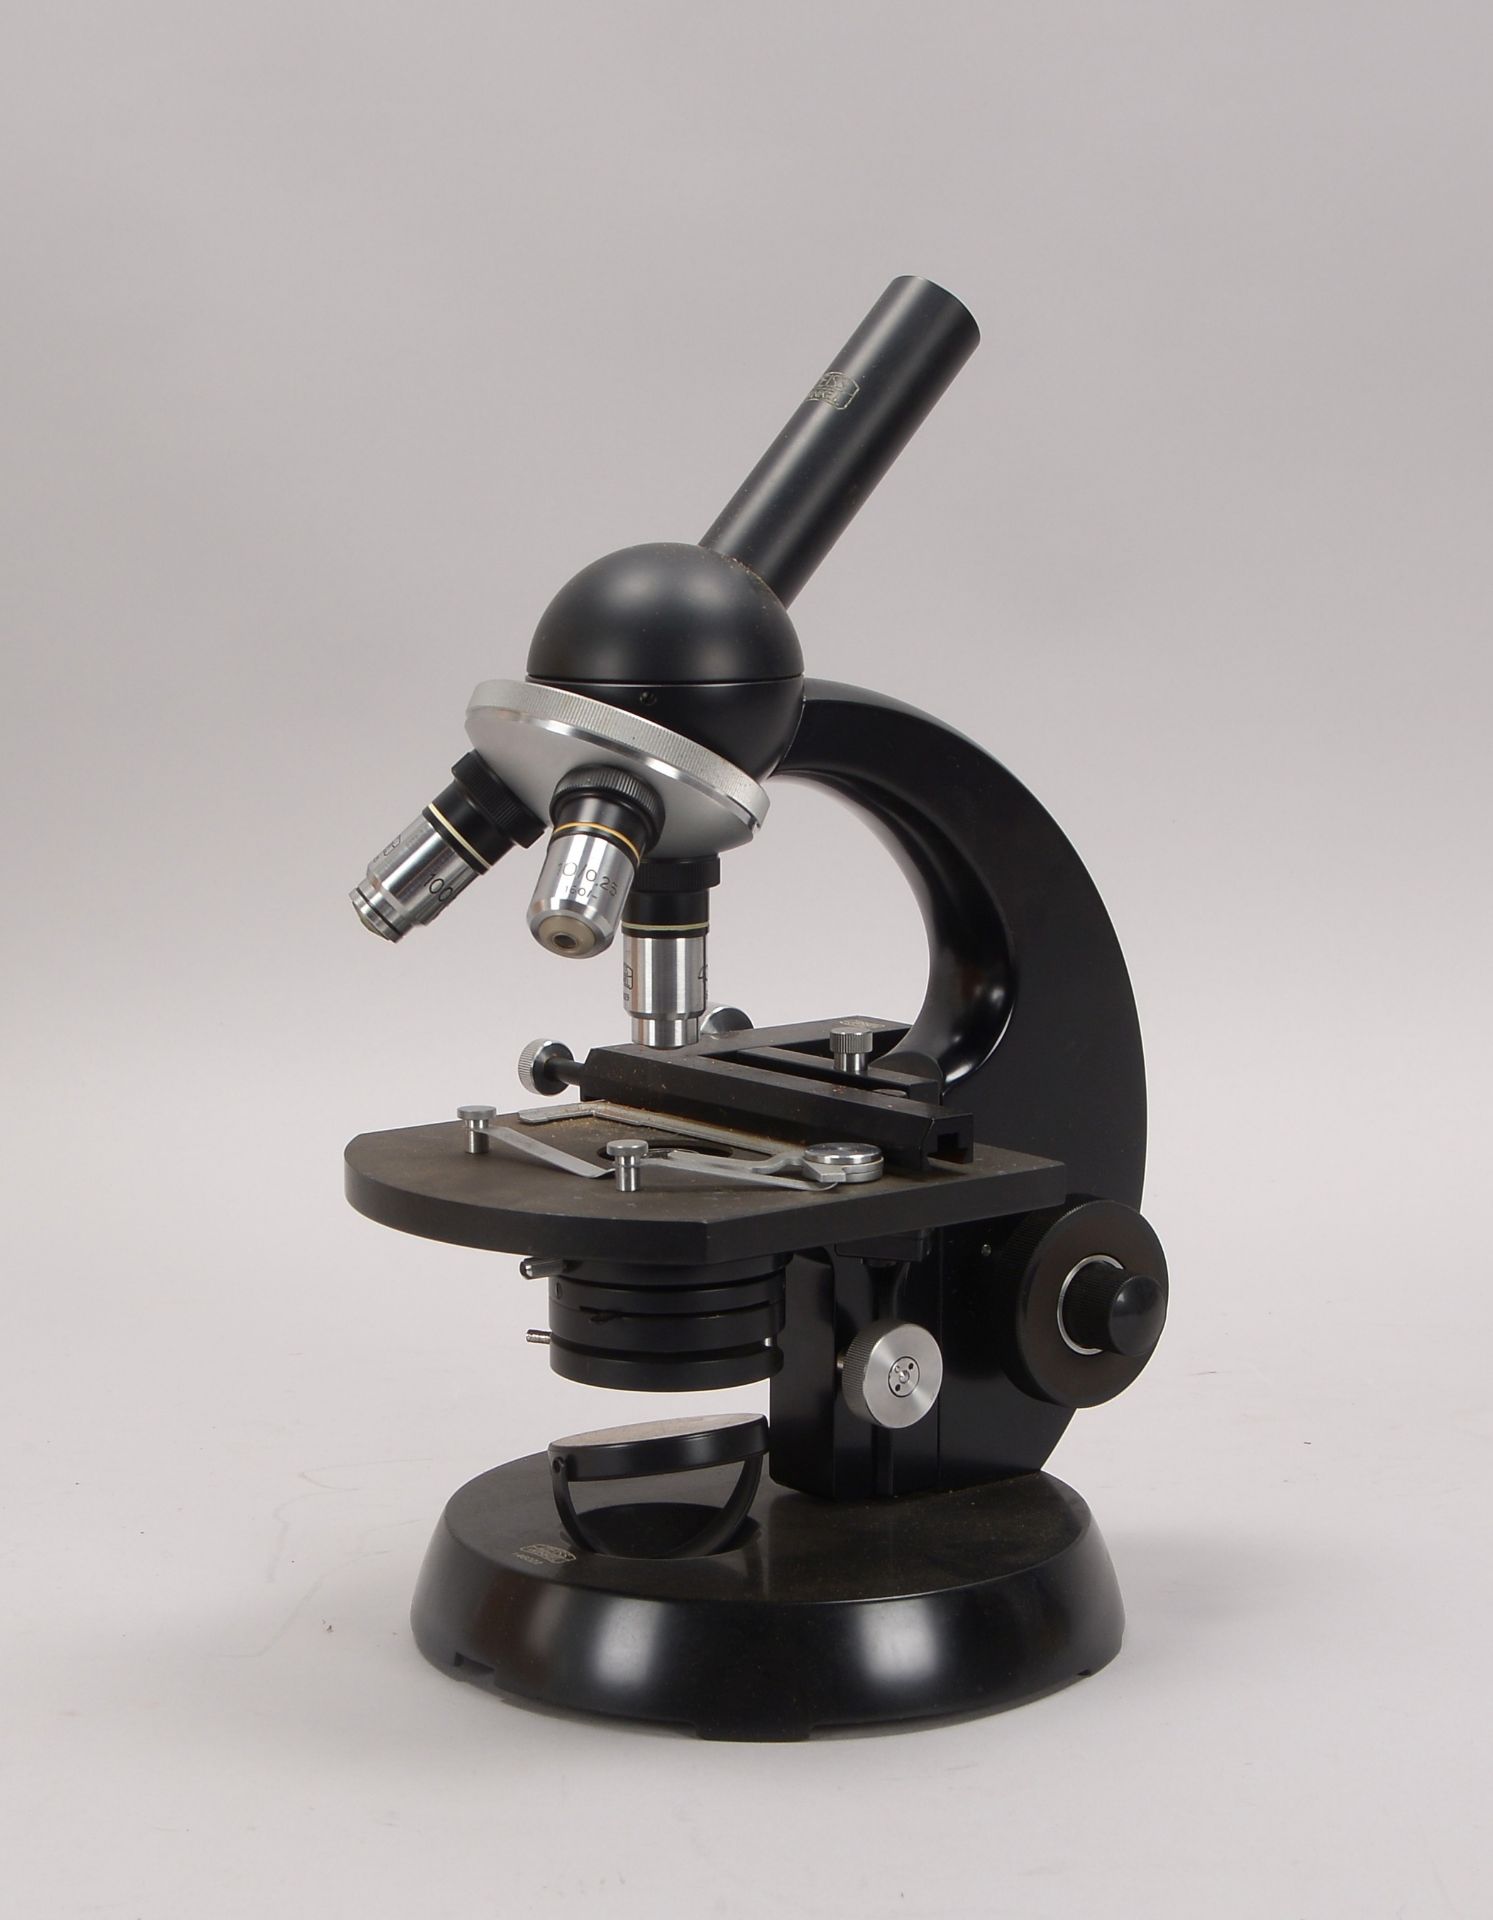 Mikroskop, Zeiss 'Winkel', Nr. '233975', mit verschiedenen Okularen, in Holzkiste - Schlüssel anbei; - Bild 3 aus 3